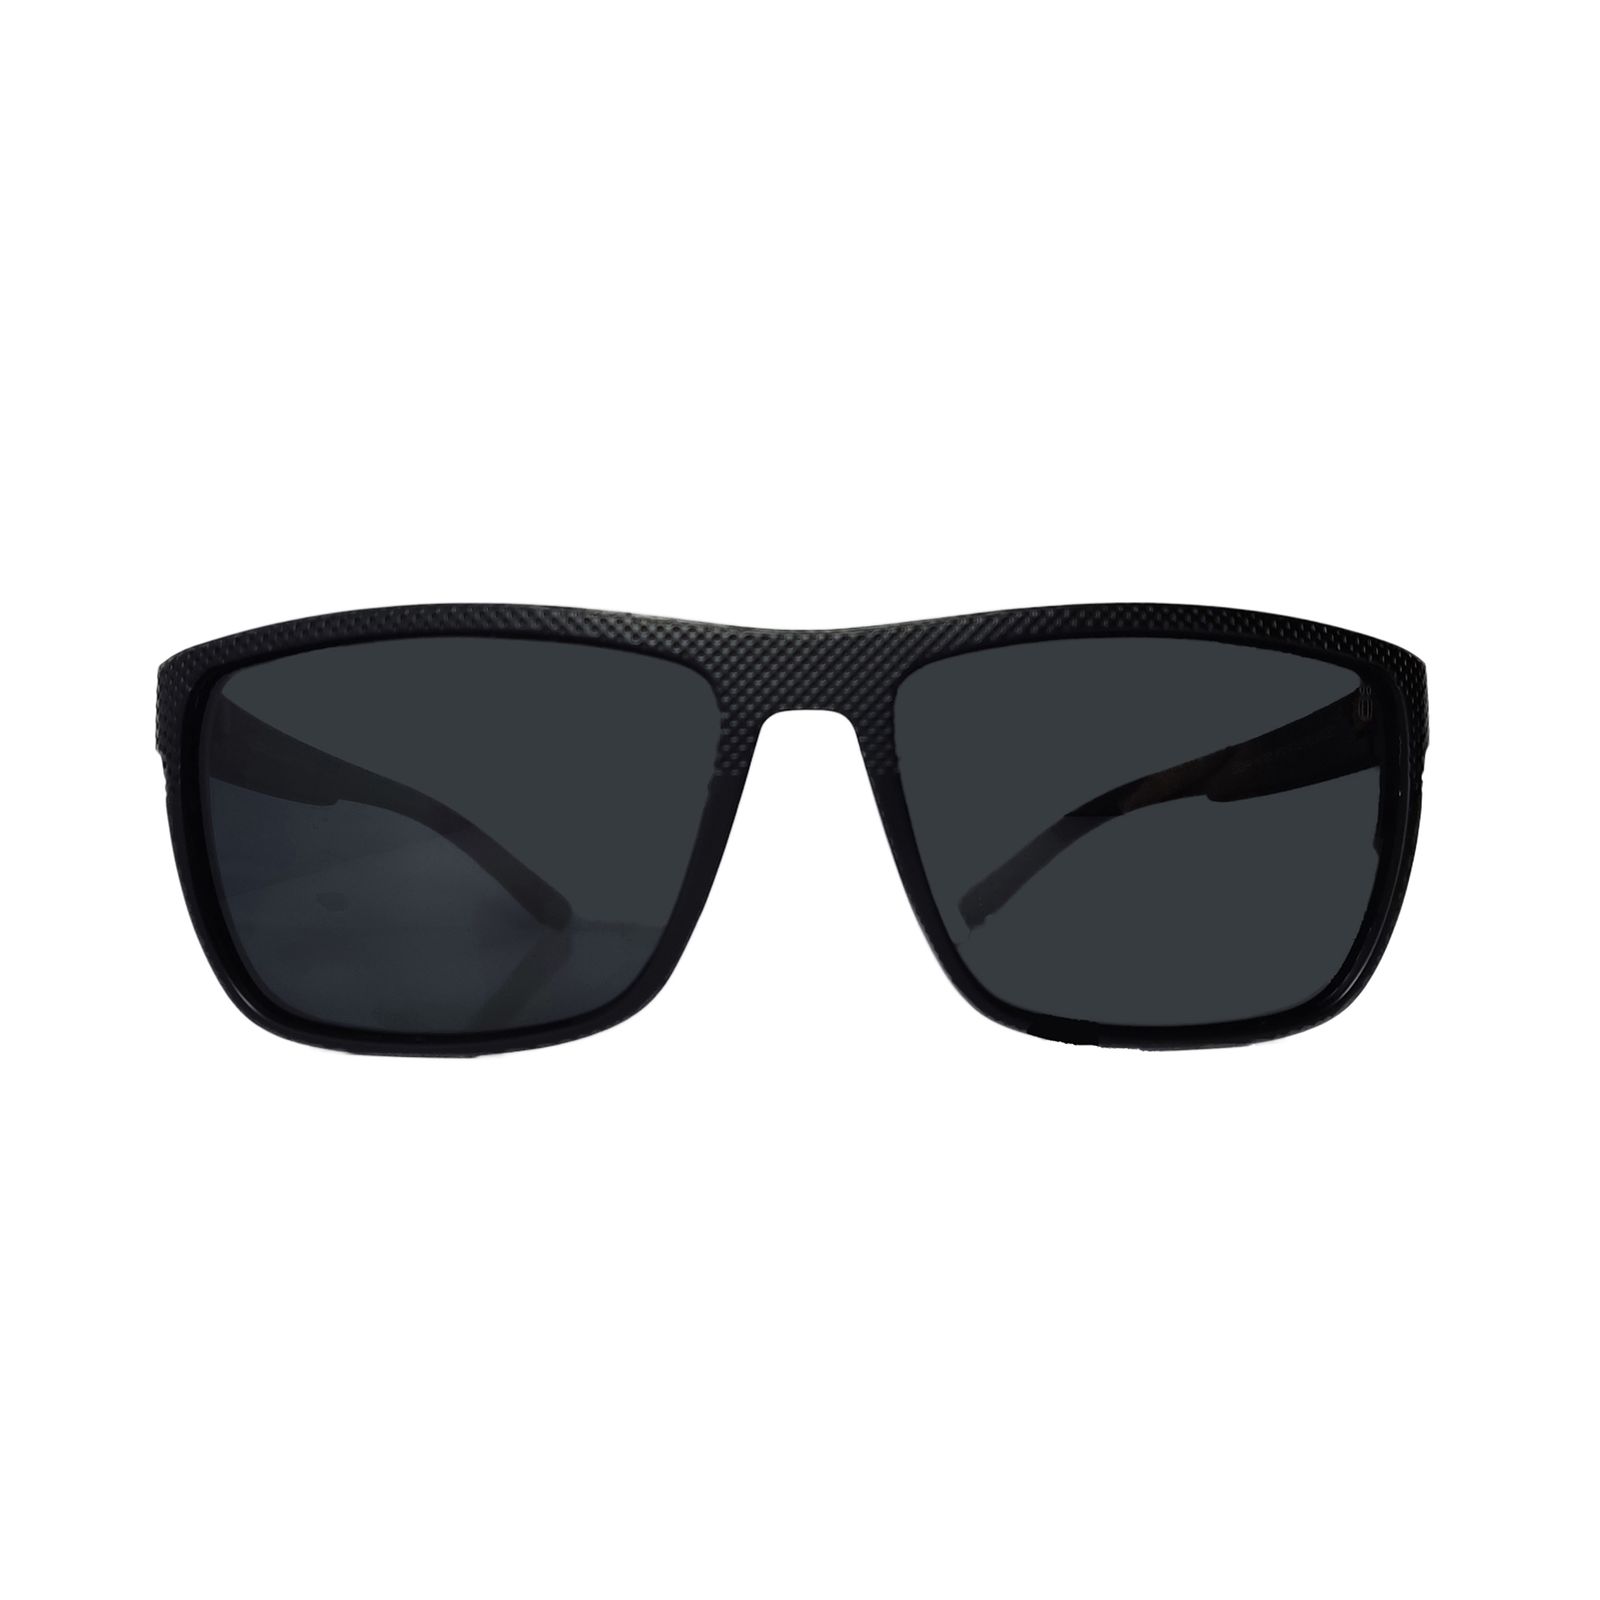 عینک آفتابی مورل مدل P97090c4 -  - 1